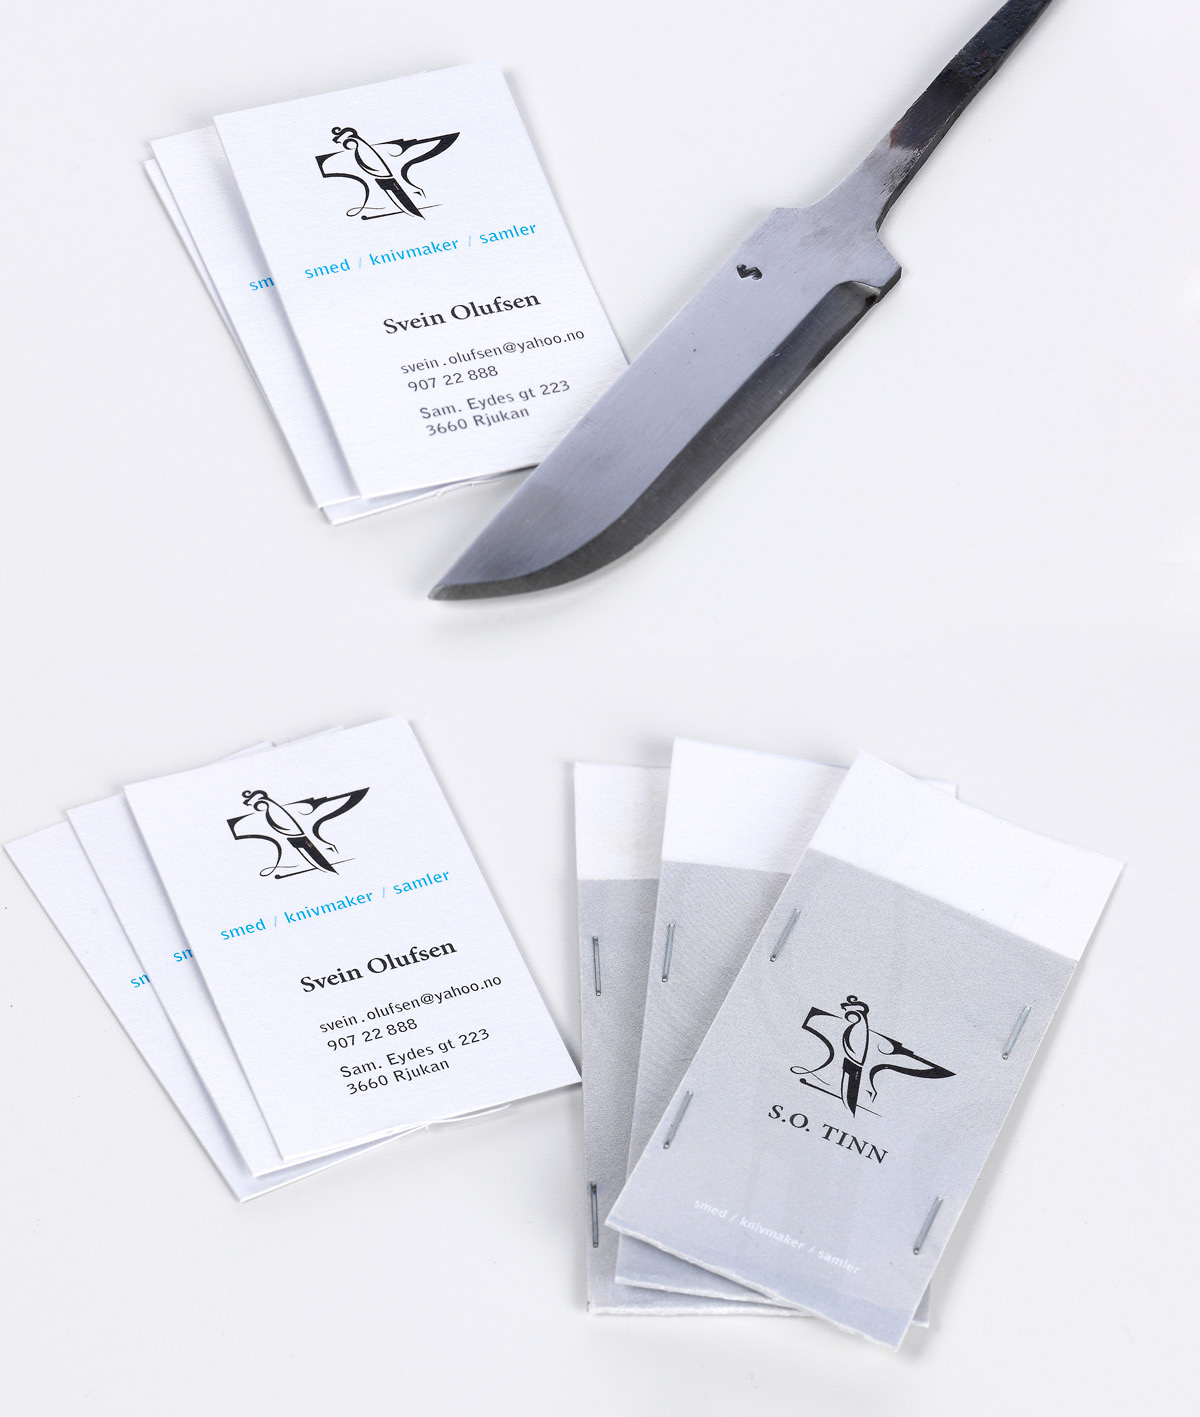 Olufsen svein tinn Blacksmith Rjukan knife envelope business card